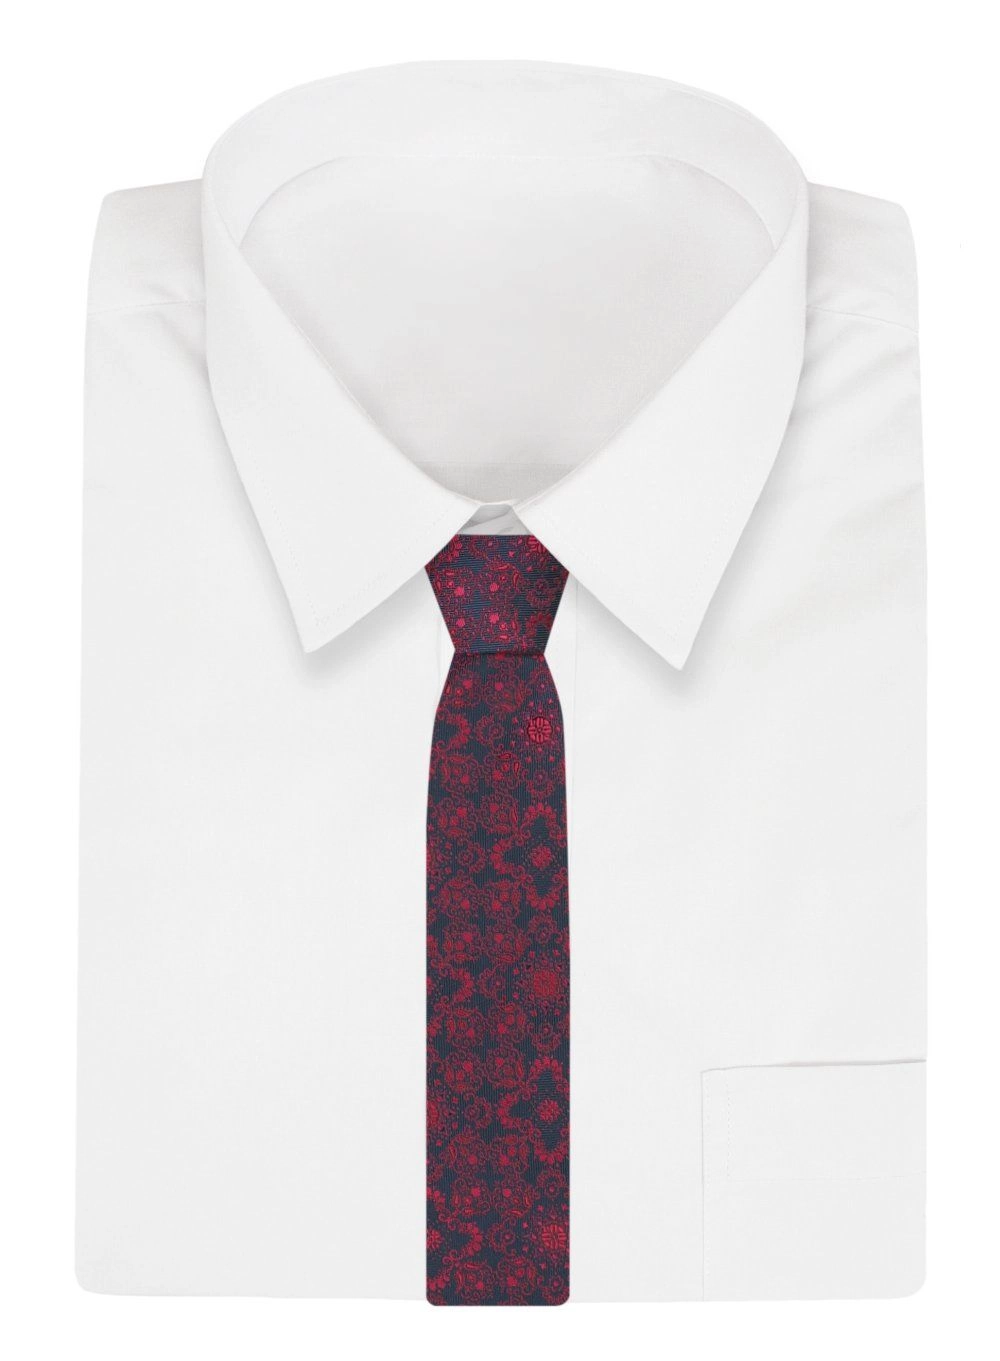 Krawat - ALTIES - Granatowy, Czerwony Wzór Orientalny